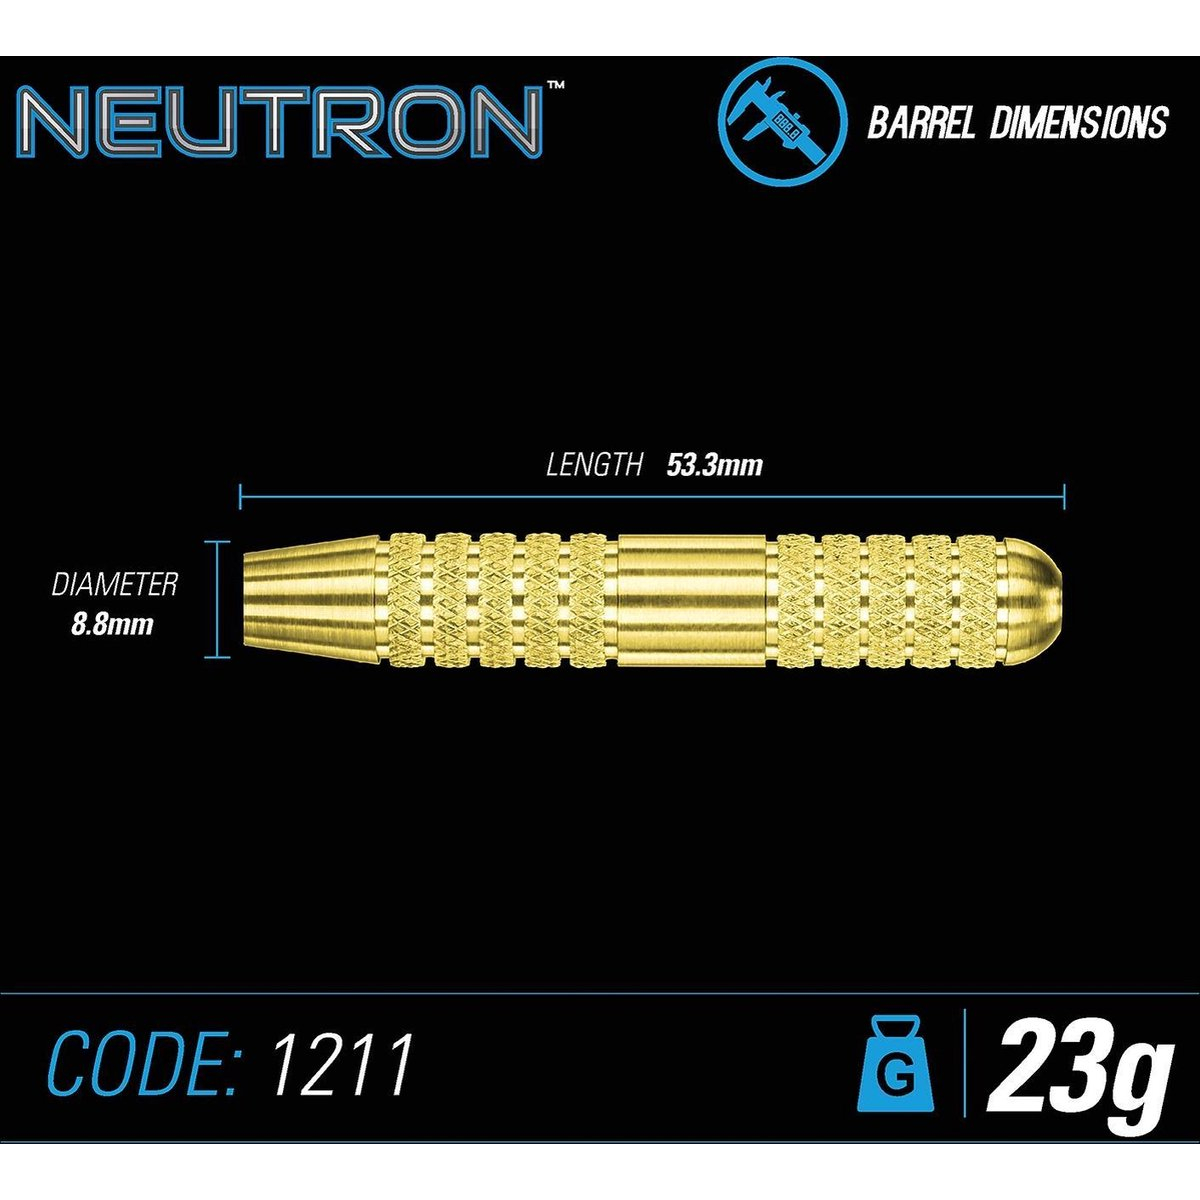  Winmau Neutron brass darts 23 gr 